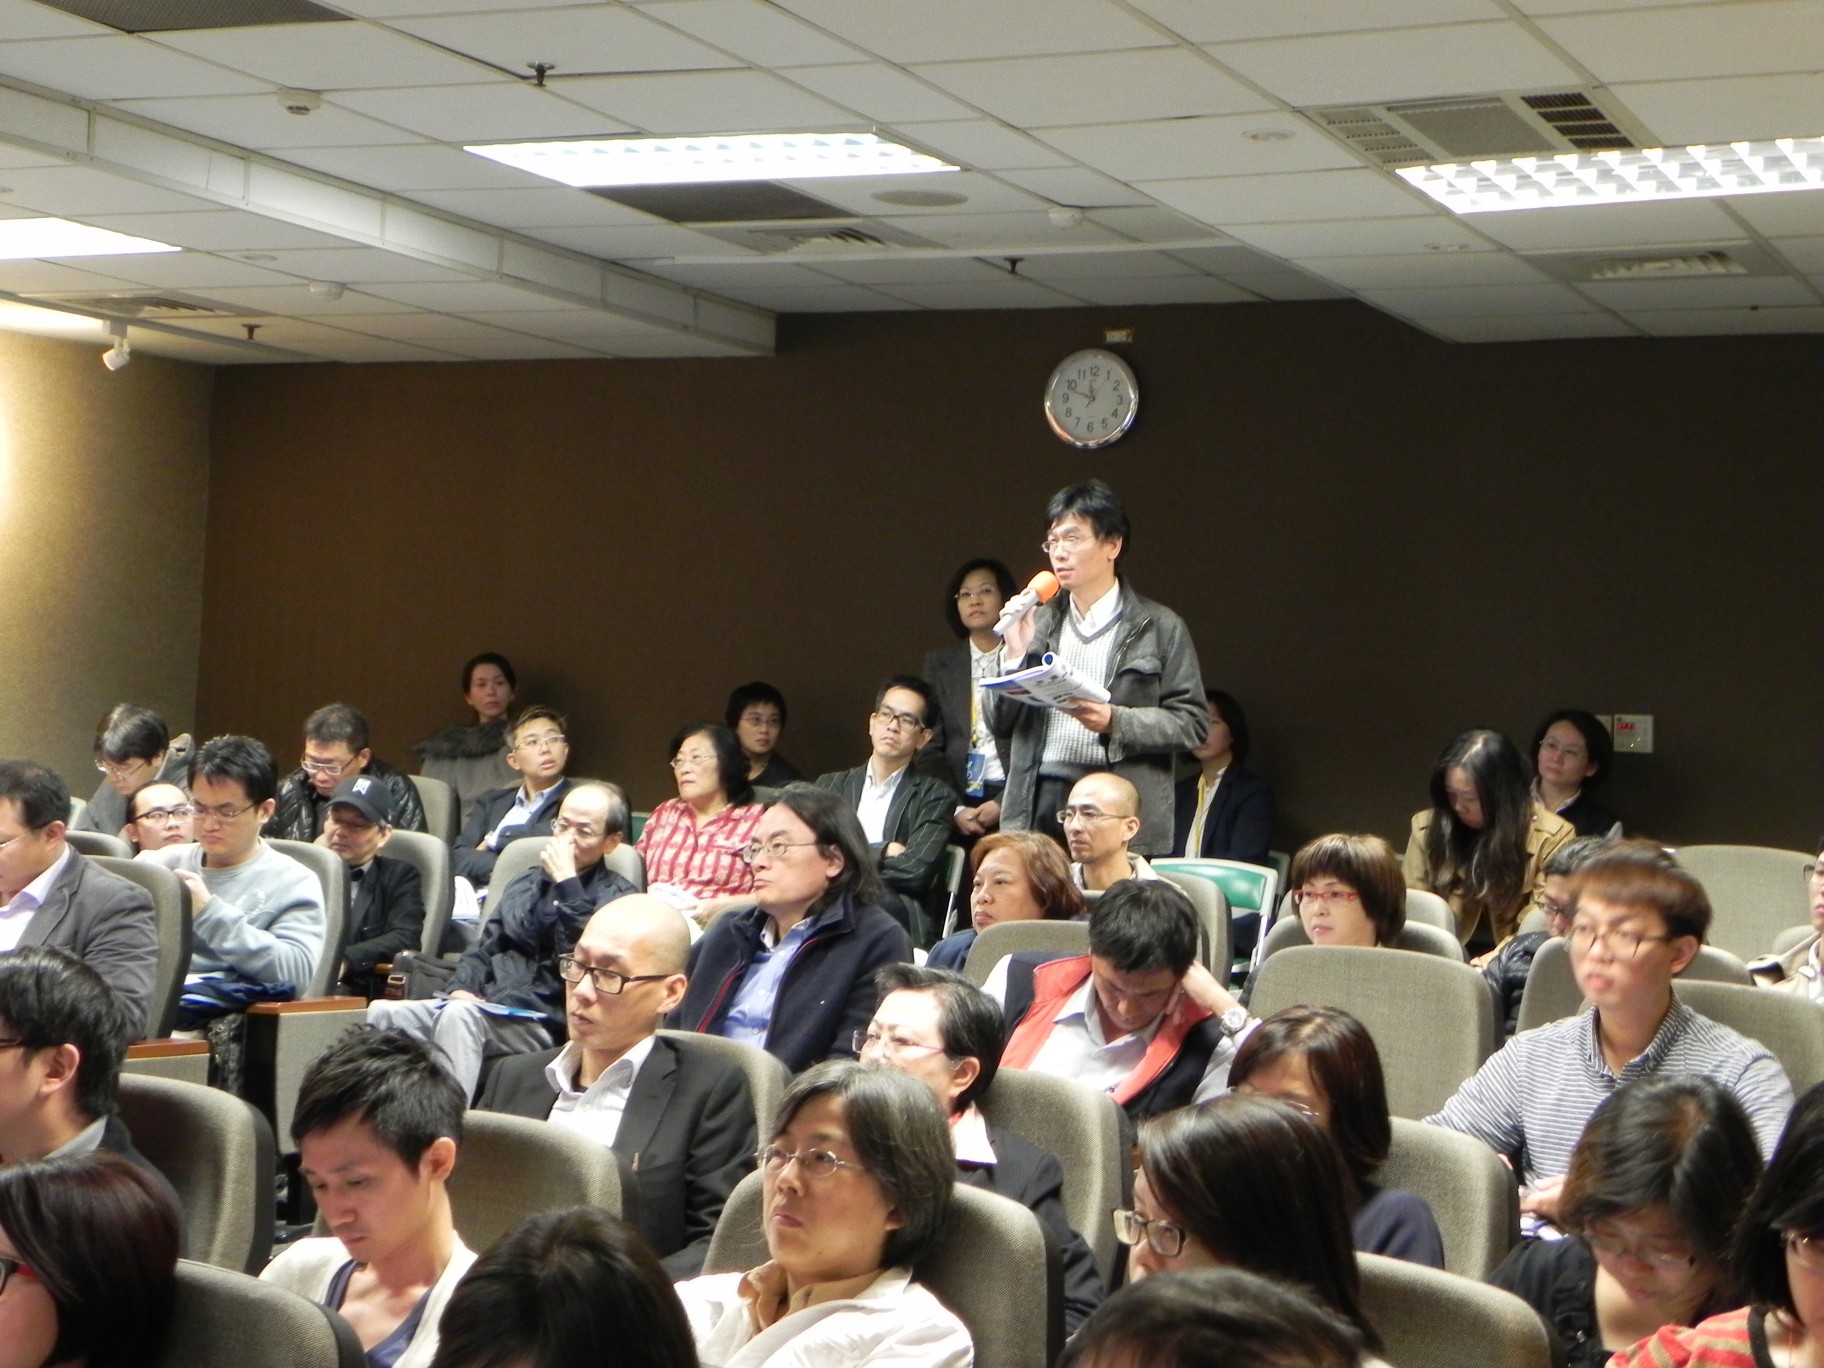 102年11月27日至28日 第30屆中日工程技術研討會(營建組):日本都市再生策略論壇、這是第3張圖片